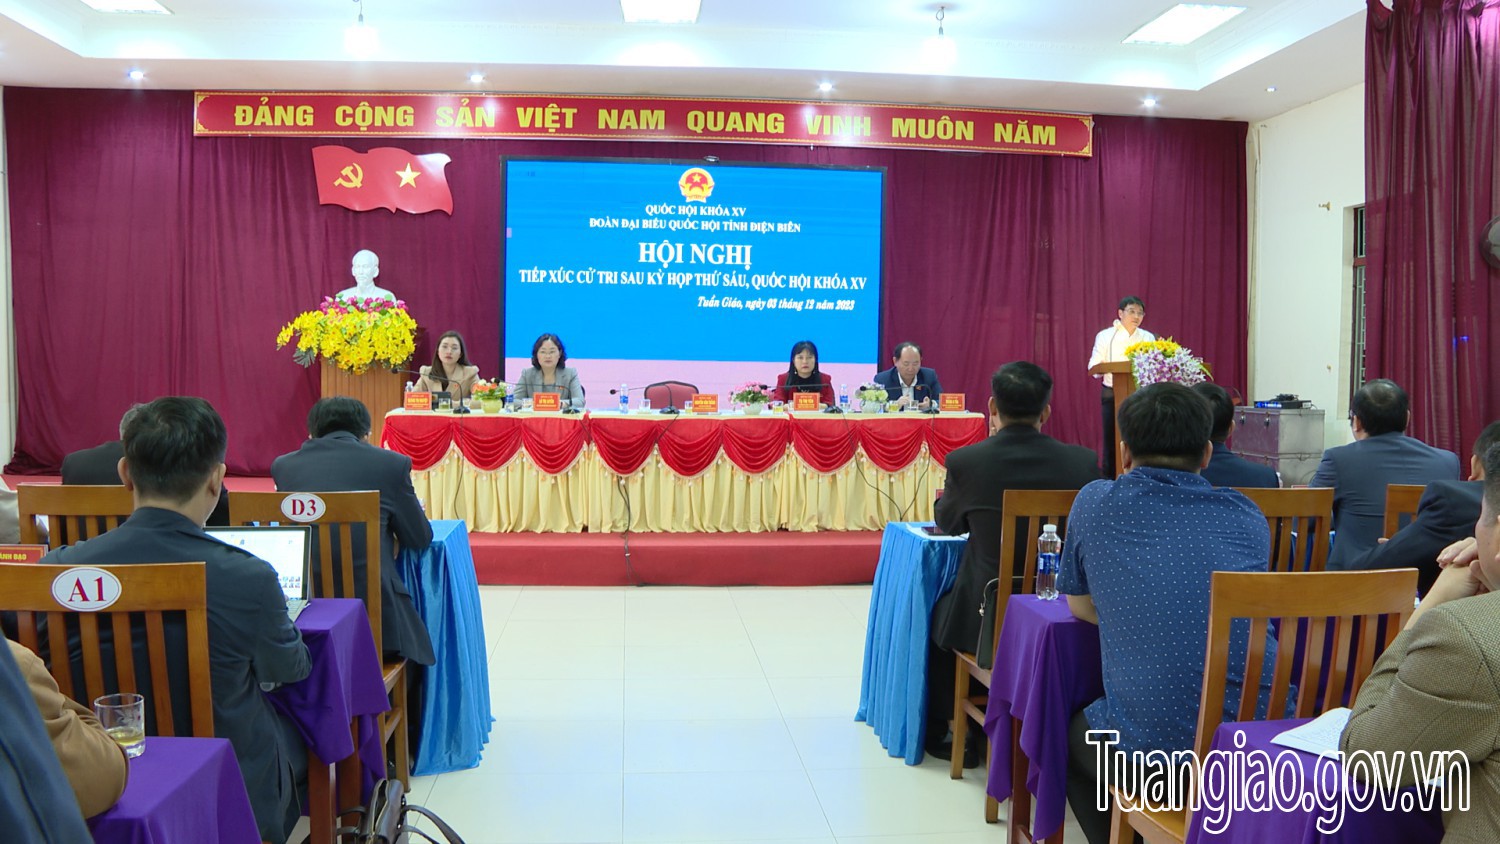 Đoàn đại biểu Quốc hội tỉnh Điện Biên tiếp xúc cử tri sau kỳ họp thứ sáu, Quốc hội khóa XV tại huyện Tuần Giáo